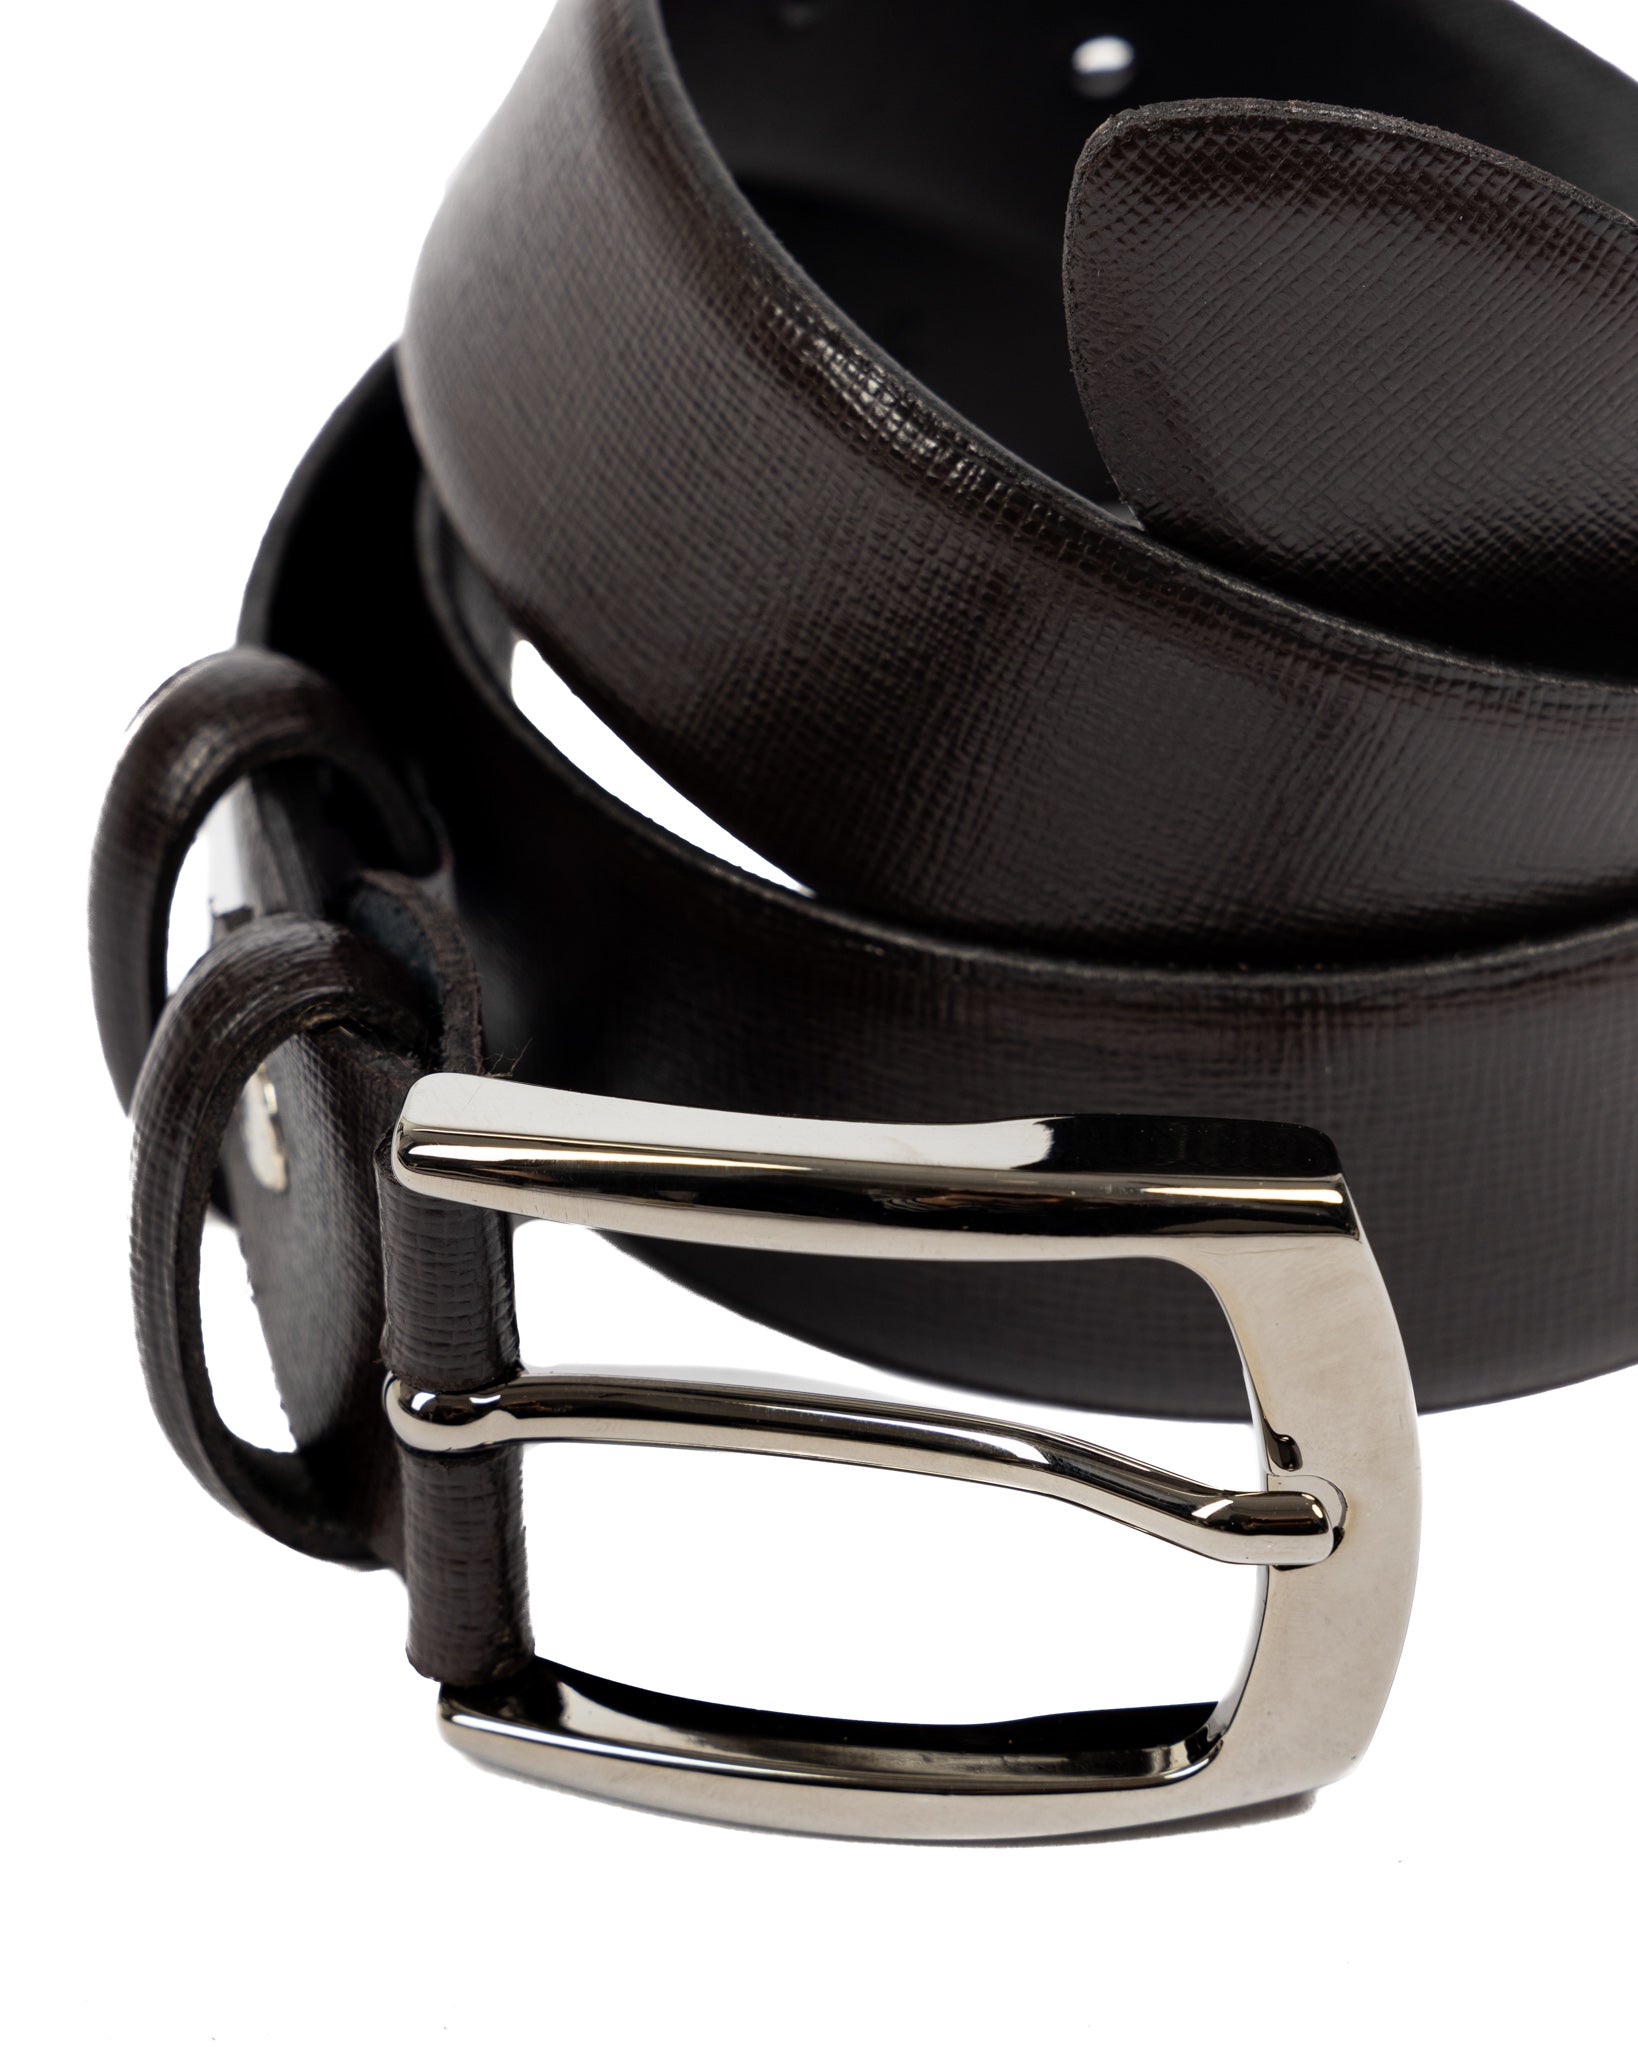 Capalbio - ceinture en cuir saffiano marron foncé